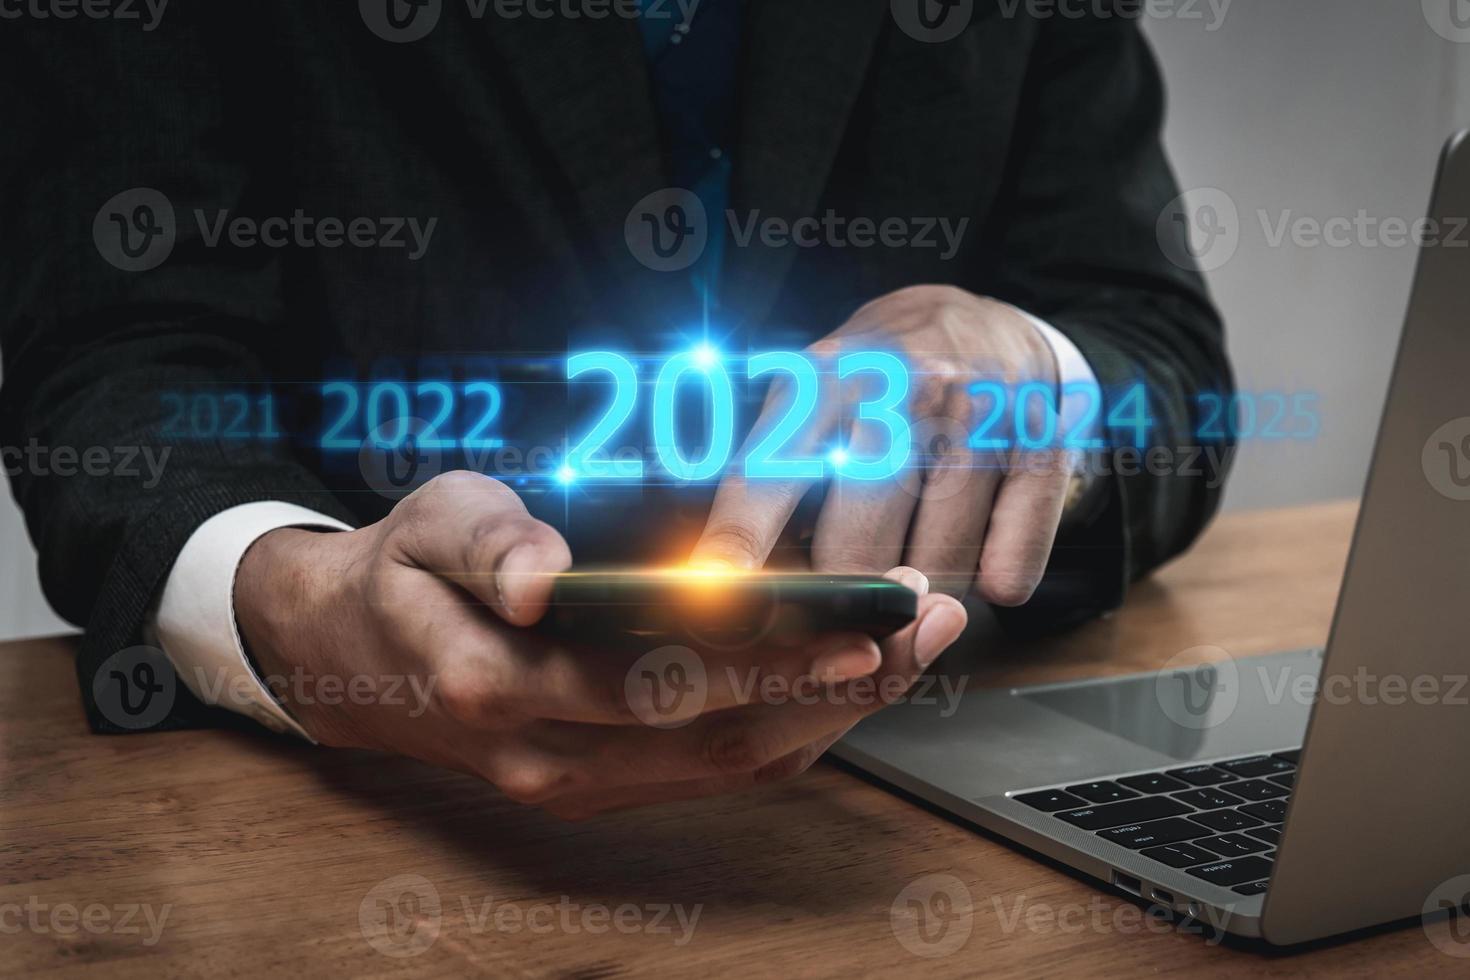 tendencia de 2023. inversionista de negocios de personas usando teléfono móvil con diagrama virtual de 2023 años, tendencia de negocios, cambio de 2022 a 2023, estrategia, inversión, planificación de negocios y concepto de feliz año nuevo foto